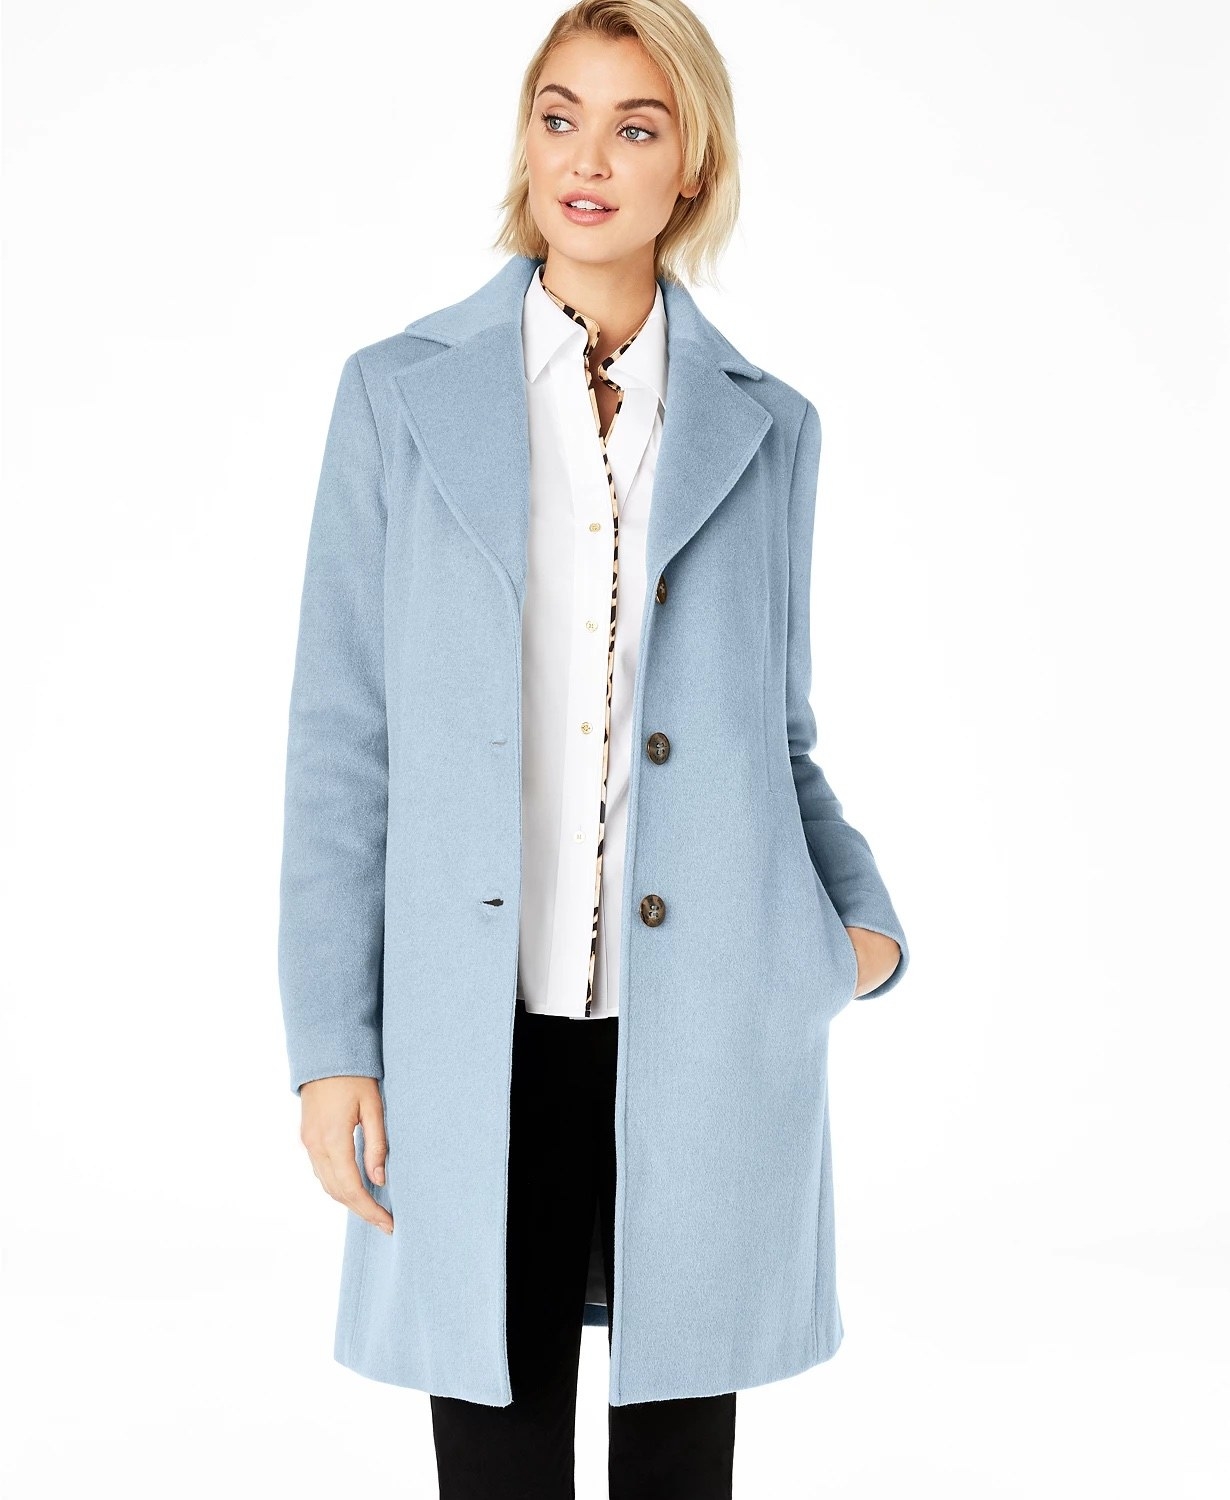 model wearing the coat